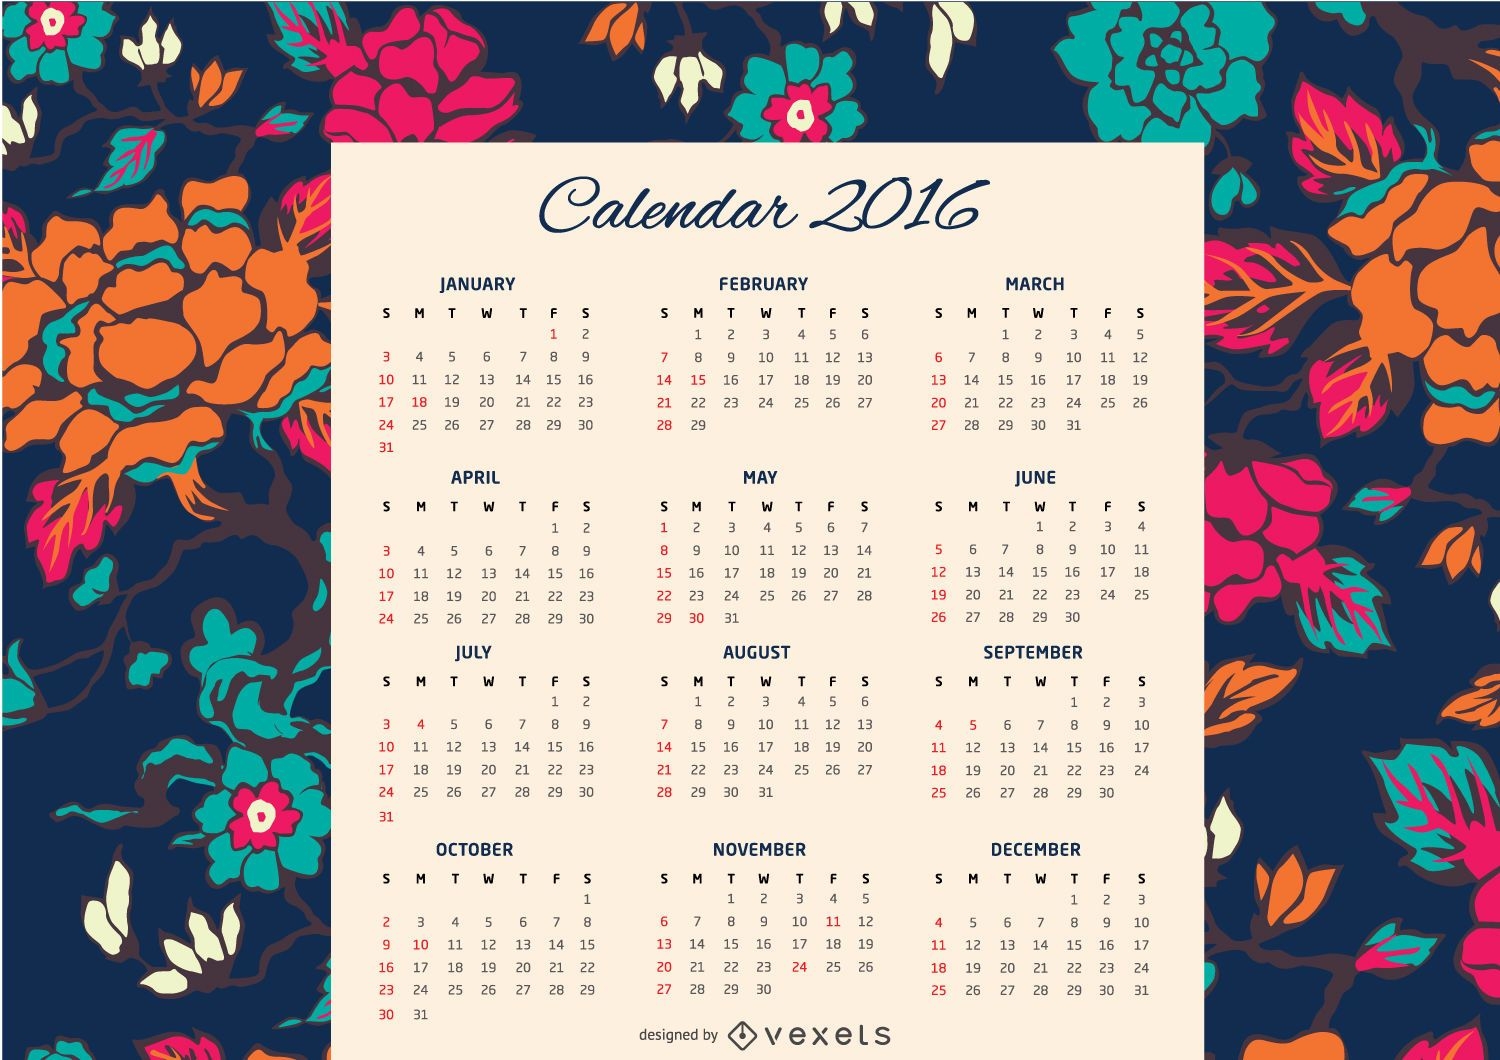 Calendario floral 2016